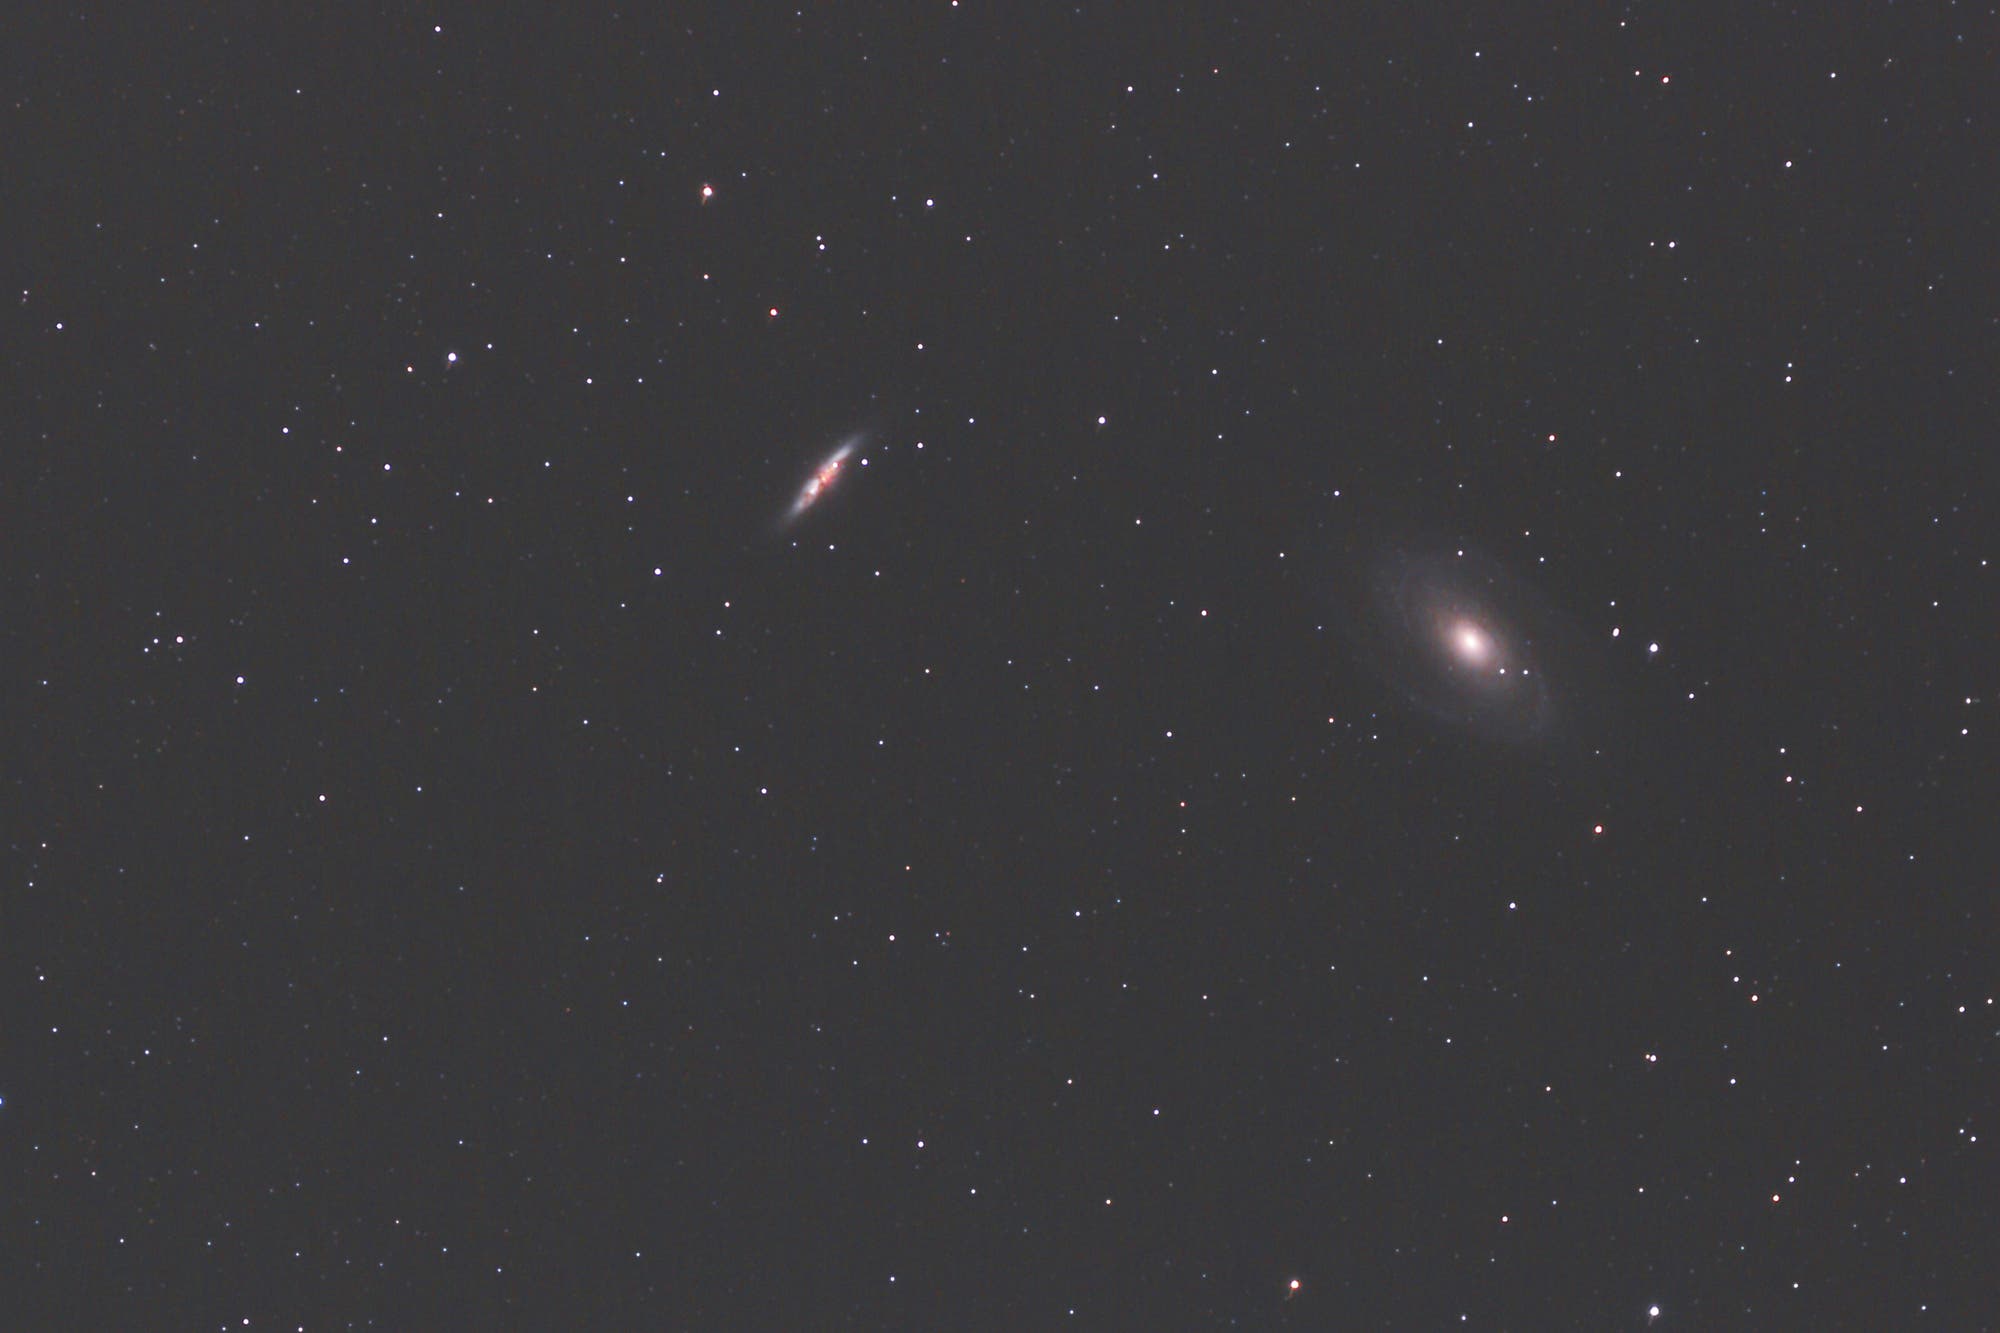 SN 2014J in M 82